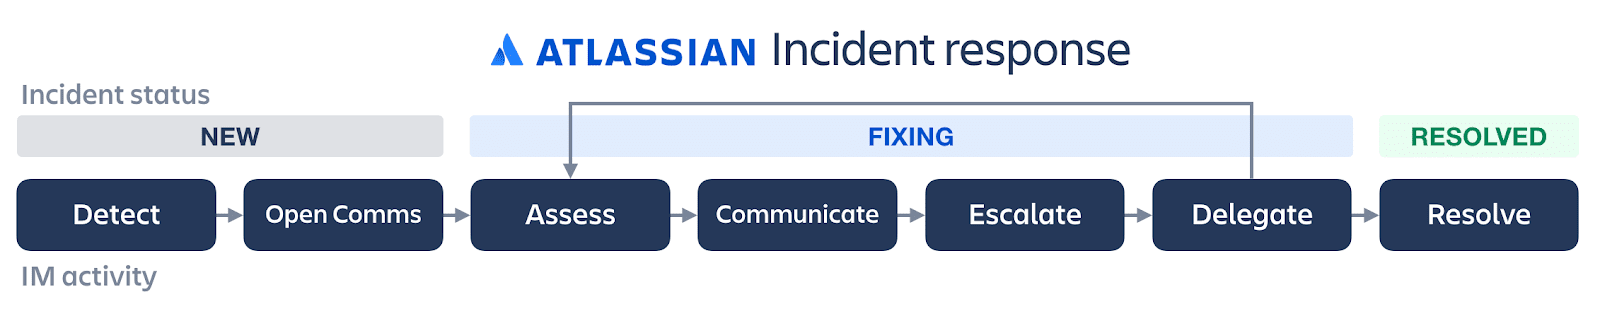 Lebenszyklusdiagramm für die Incident Response von Atlassian